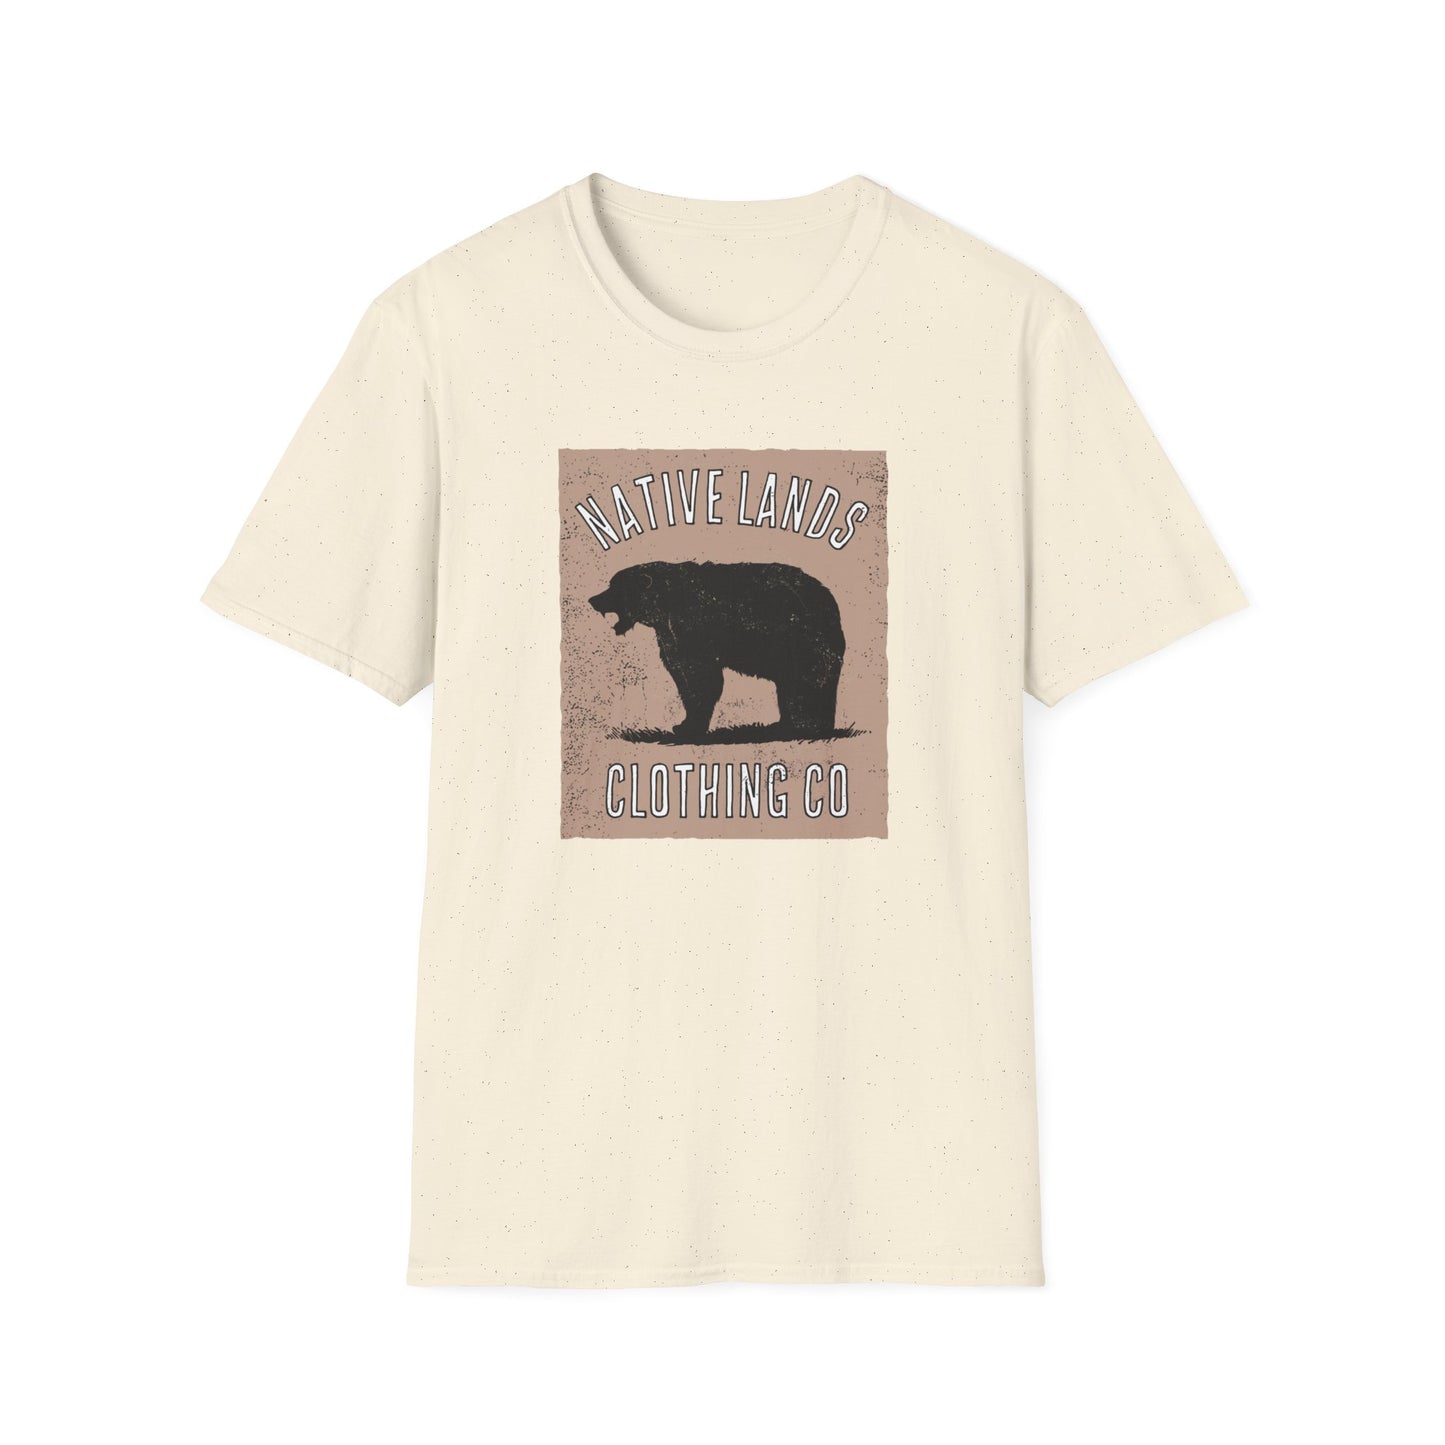 Bärenbrüllendes Hemd aus hellbrauner Baumwolle der amerikanischen Ureinwohner